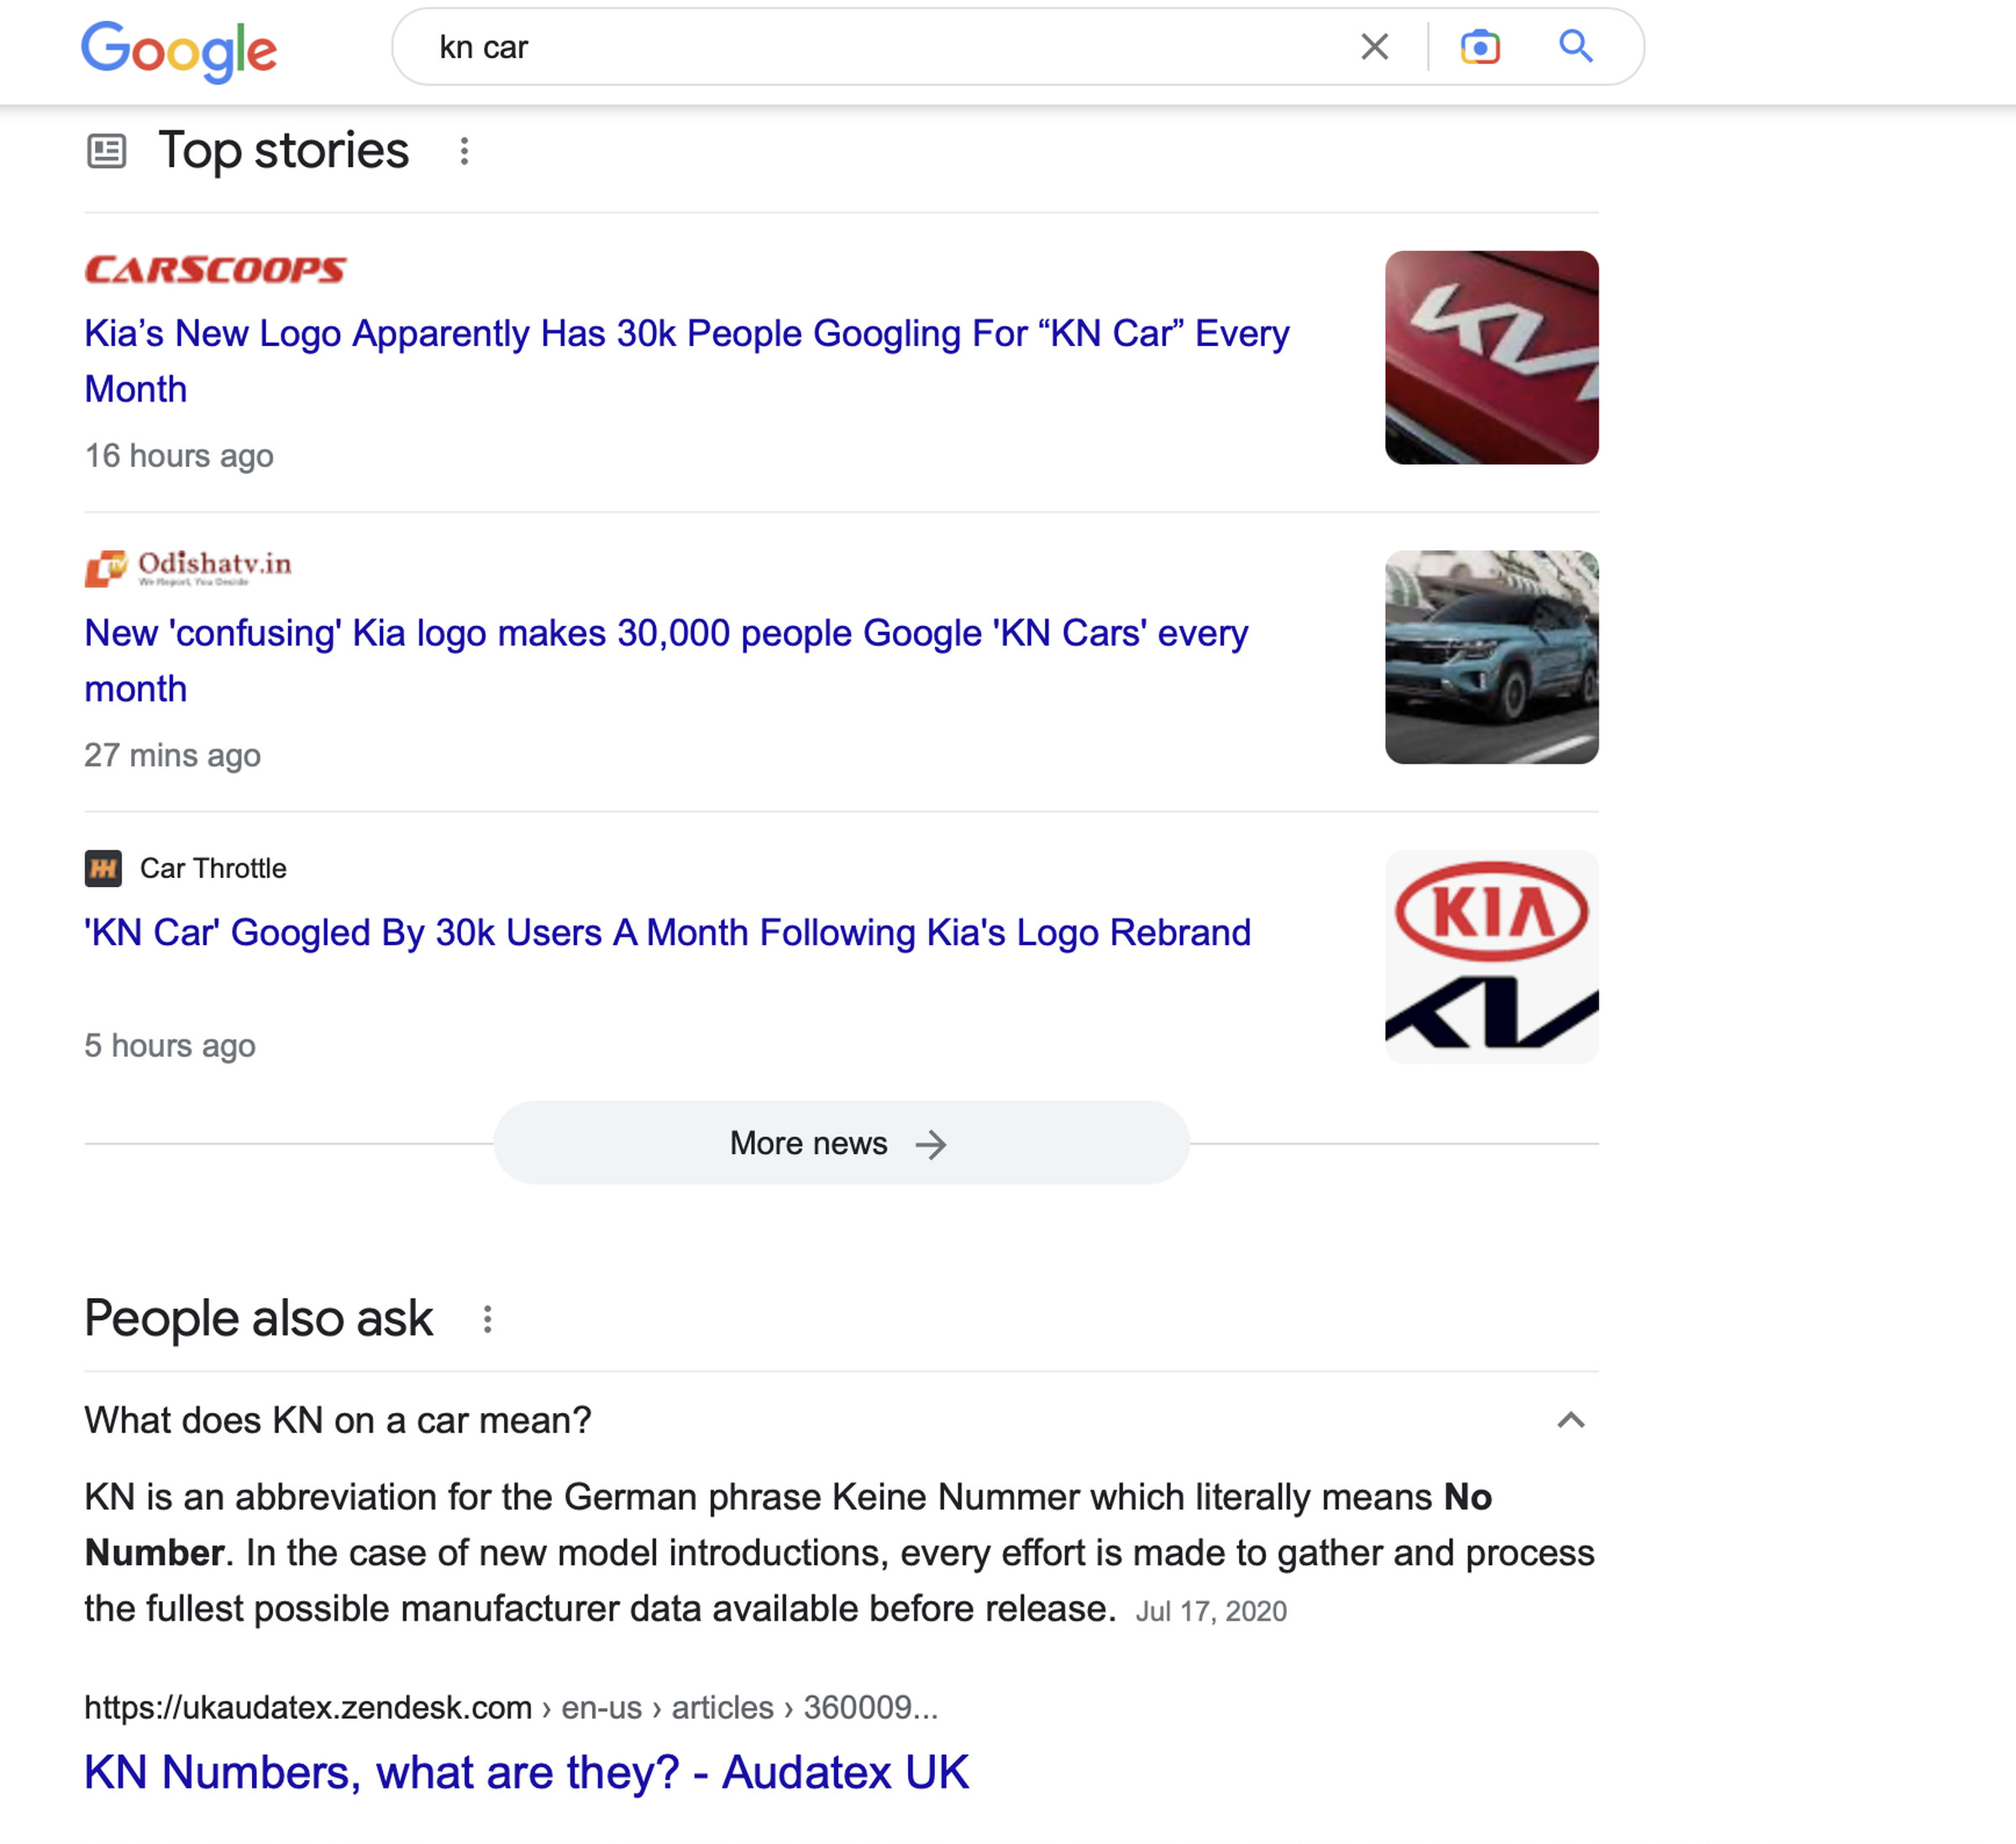 Captura de tela dos principais resultados de pesquisa do Google para carro KN, mostrando três histórias e uma resposta a 